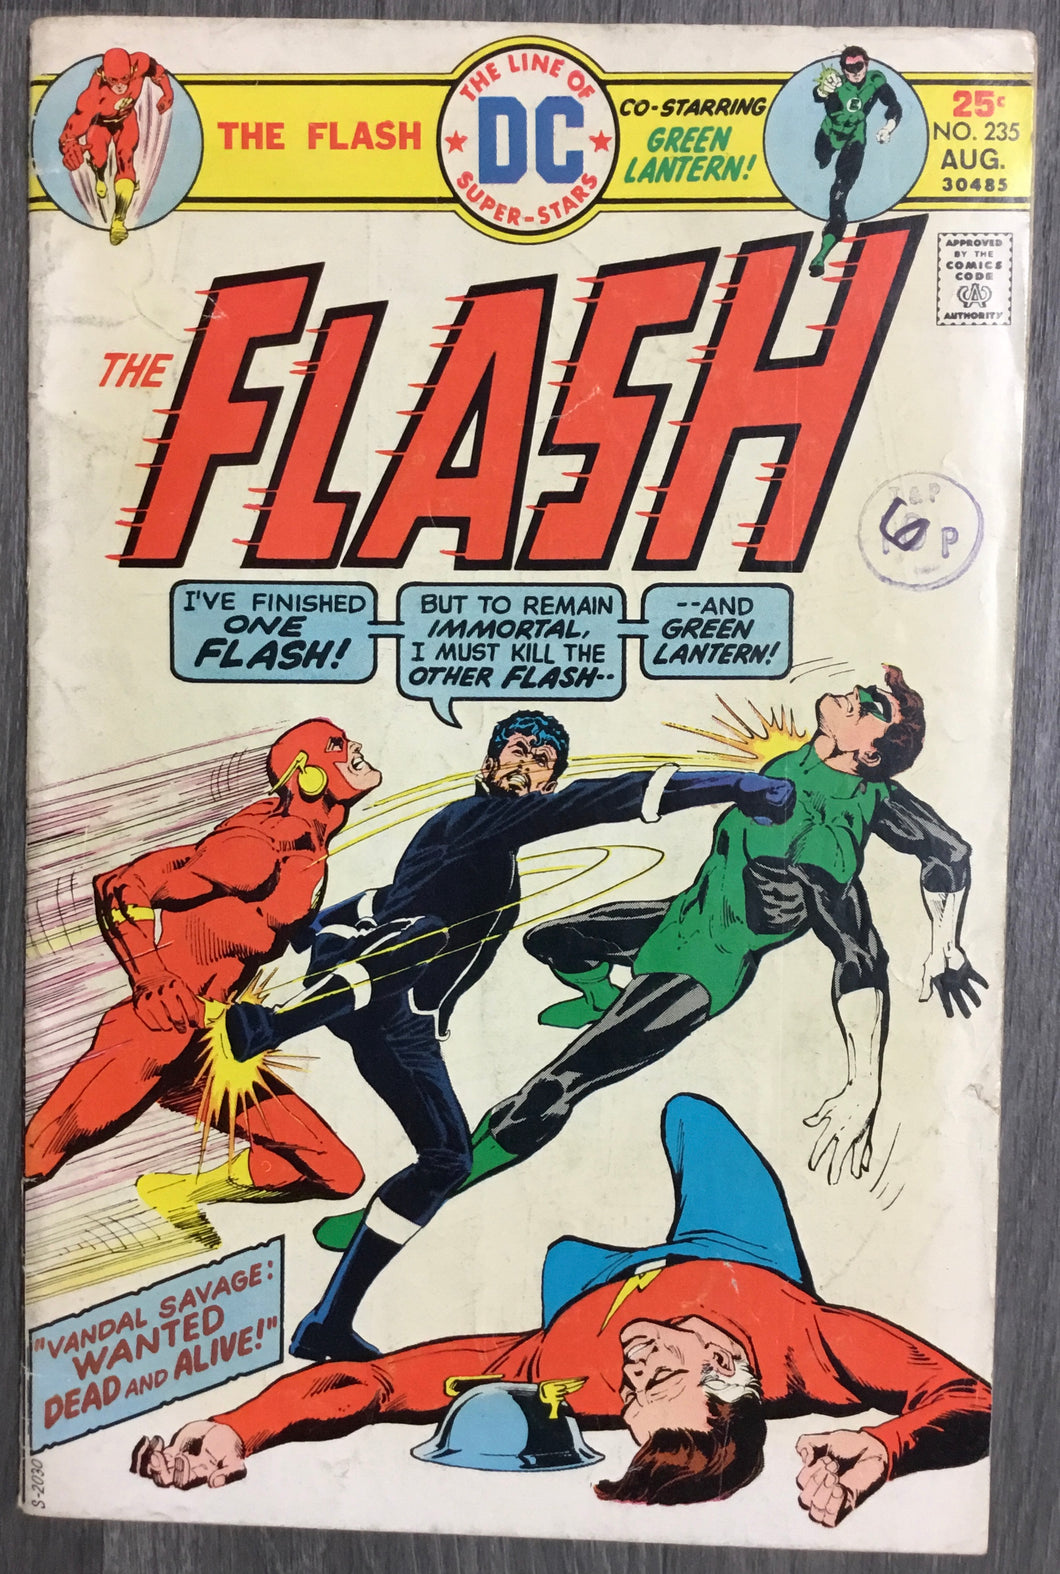 The Flash No. #235 1975 DC Comics